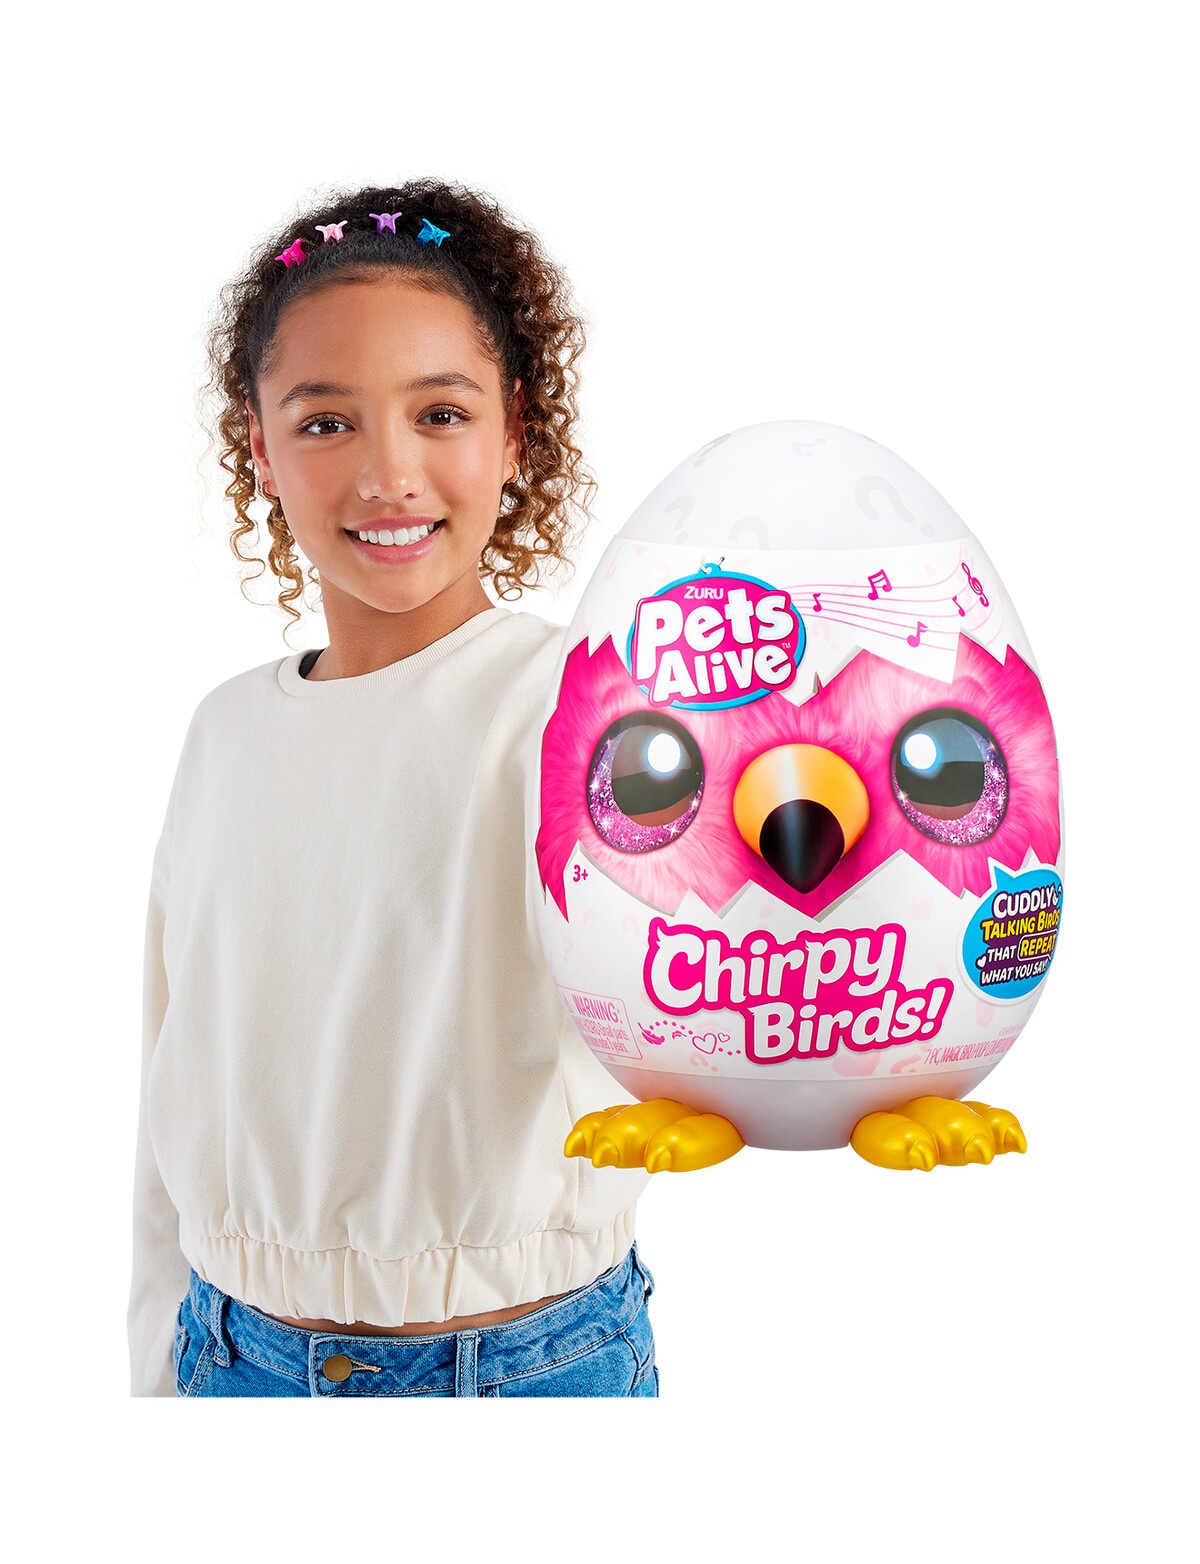 Pets Alive Chirpy Birds Interactive Speaking Pet Plush Toy by ZURU in 2023